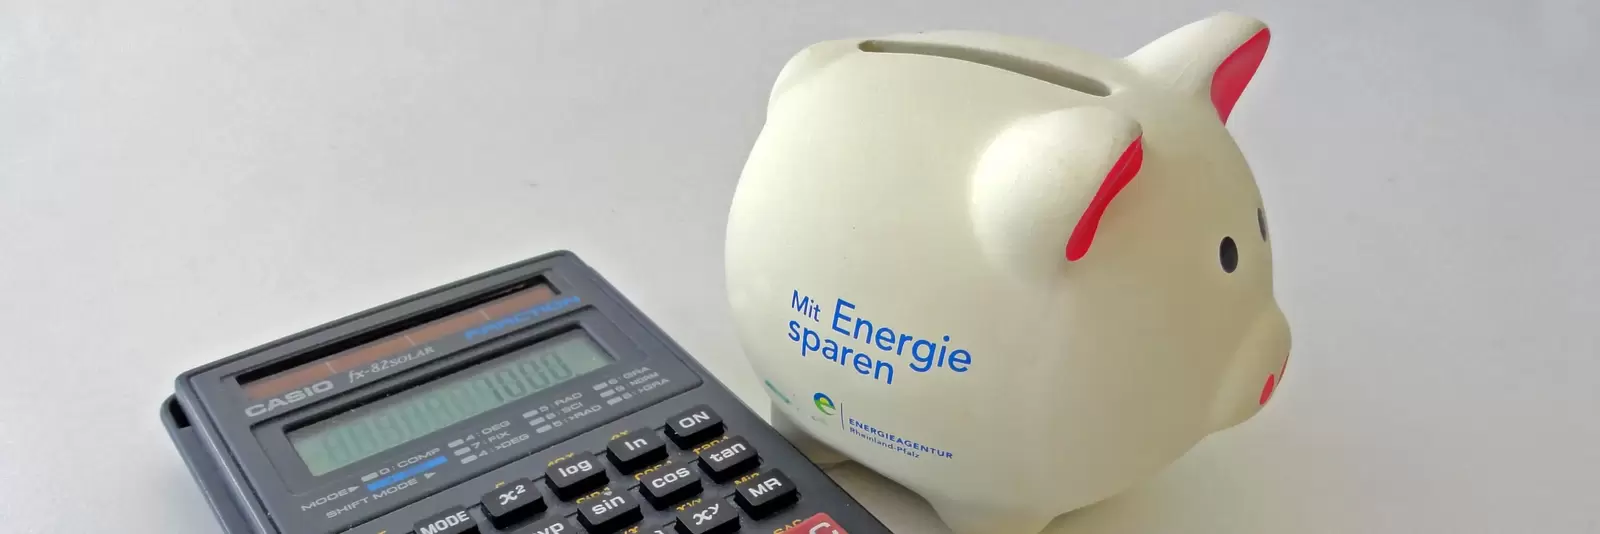 Taschenrechner und Sparschwein mit Aufschrift "Mit Energie sparen"